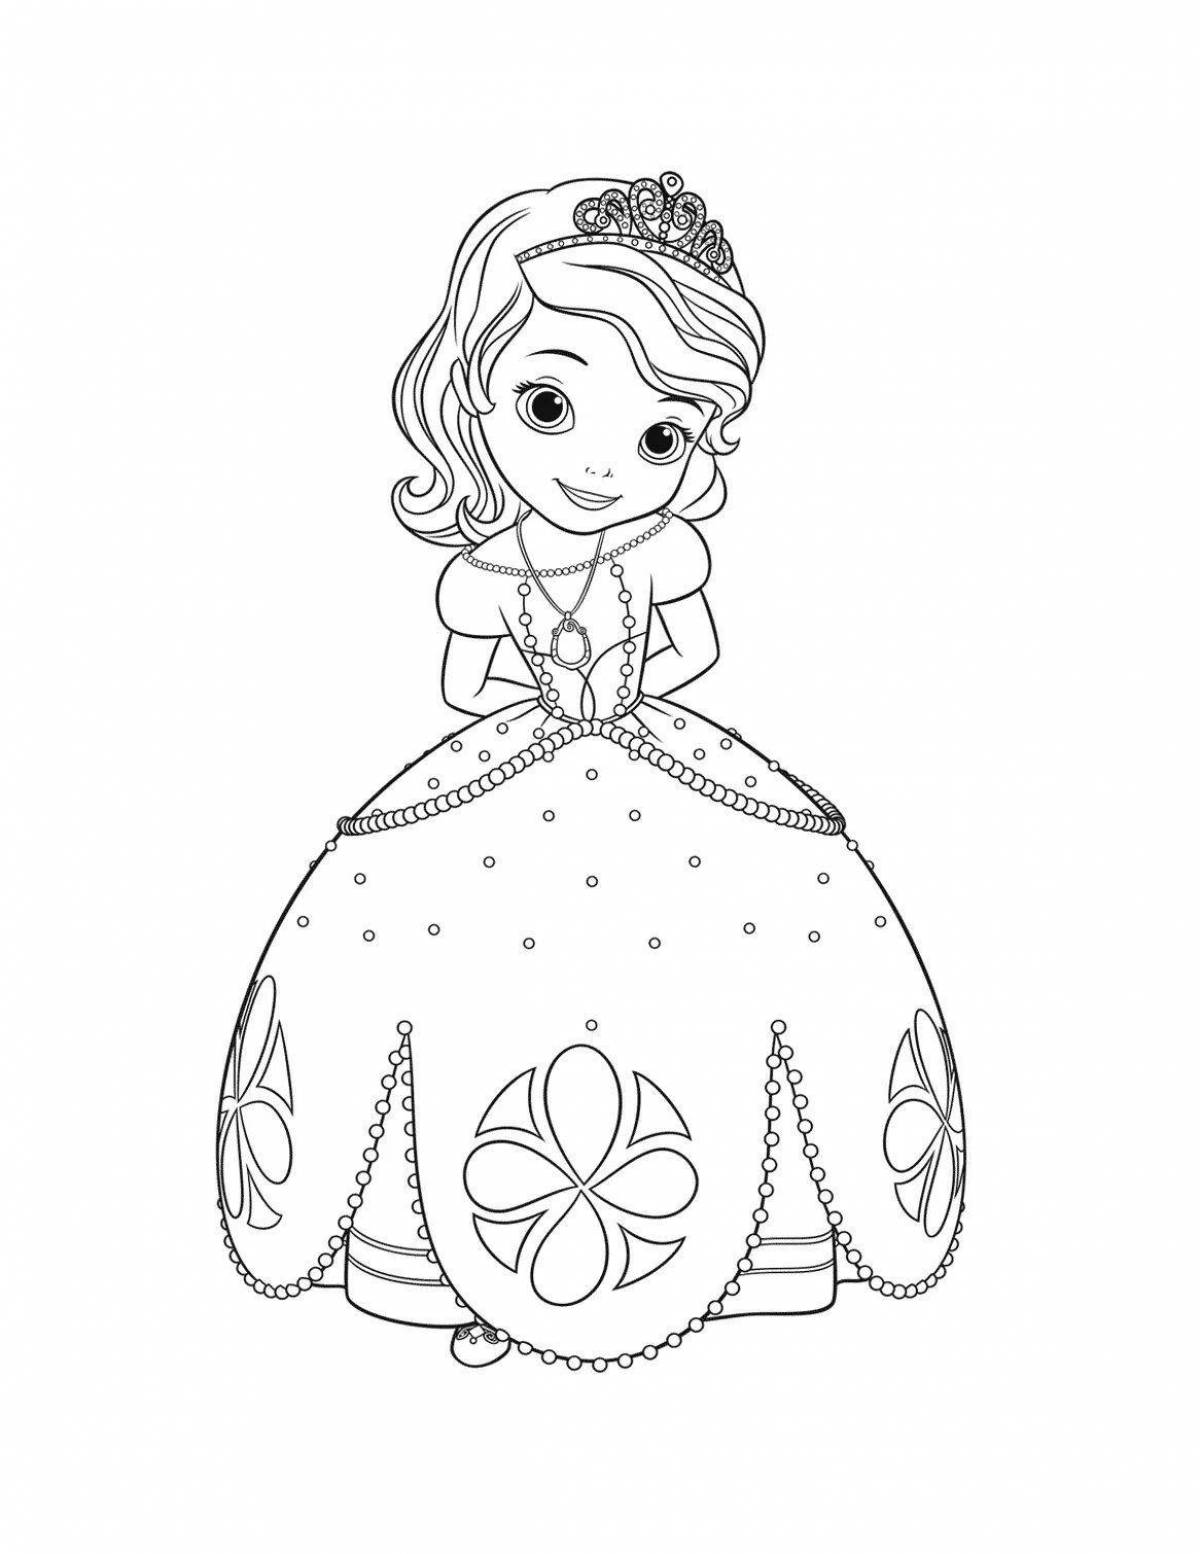 Радостная раскраска принцесса софия для детей